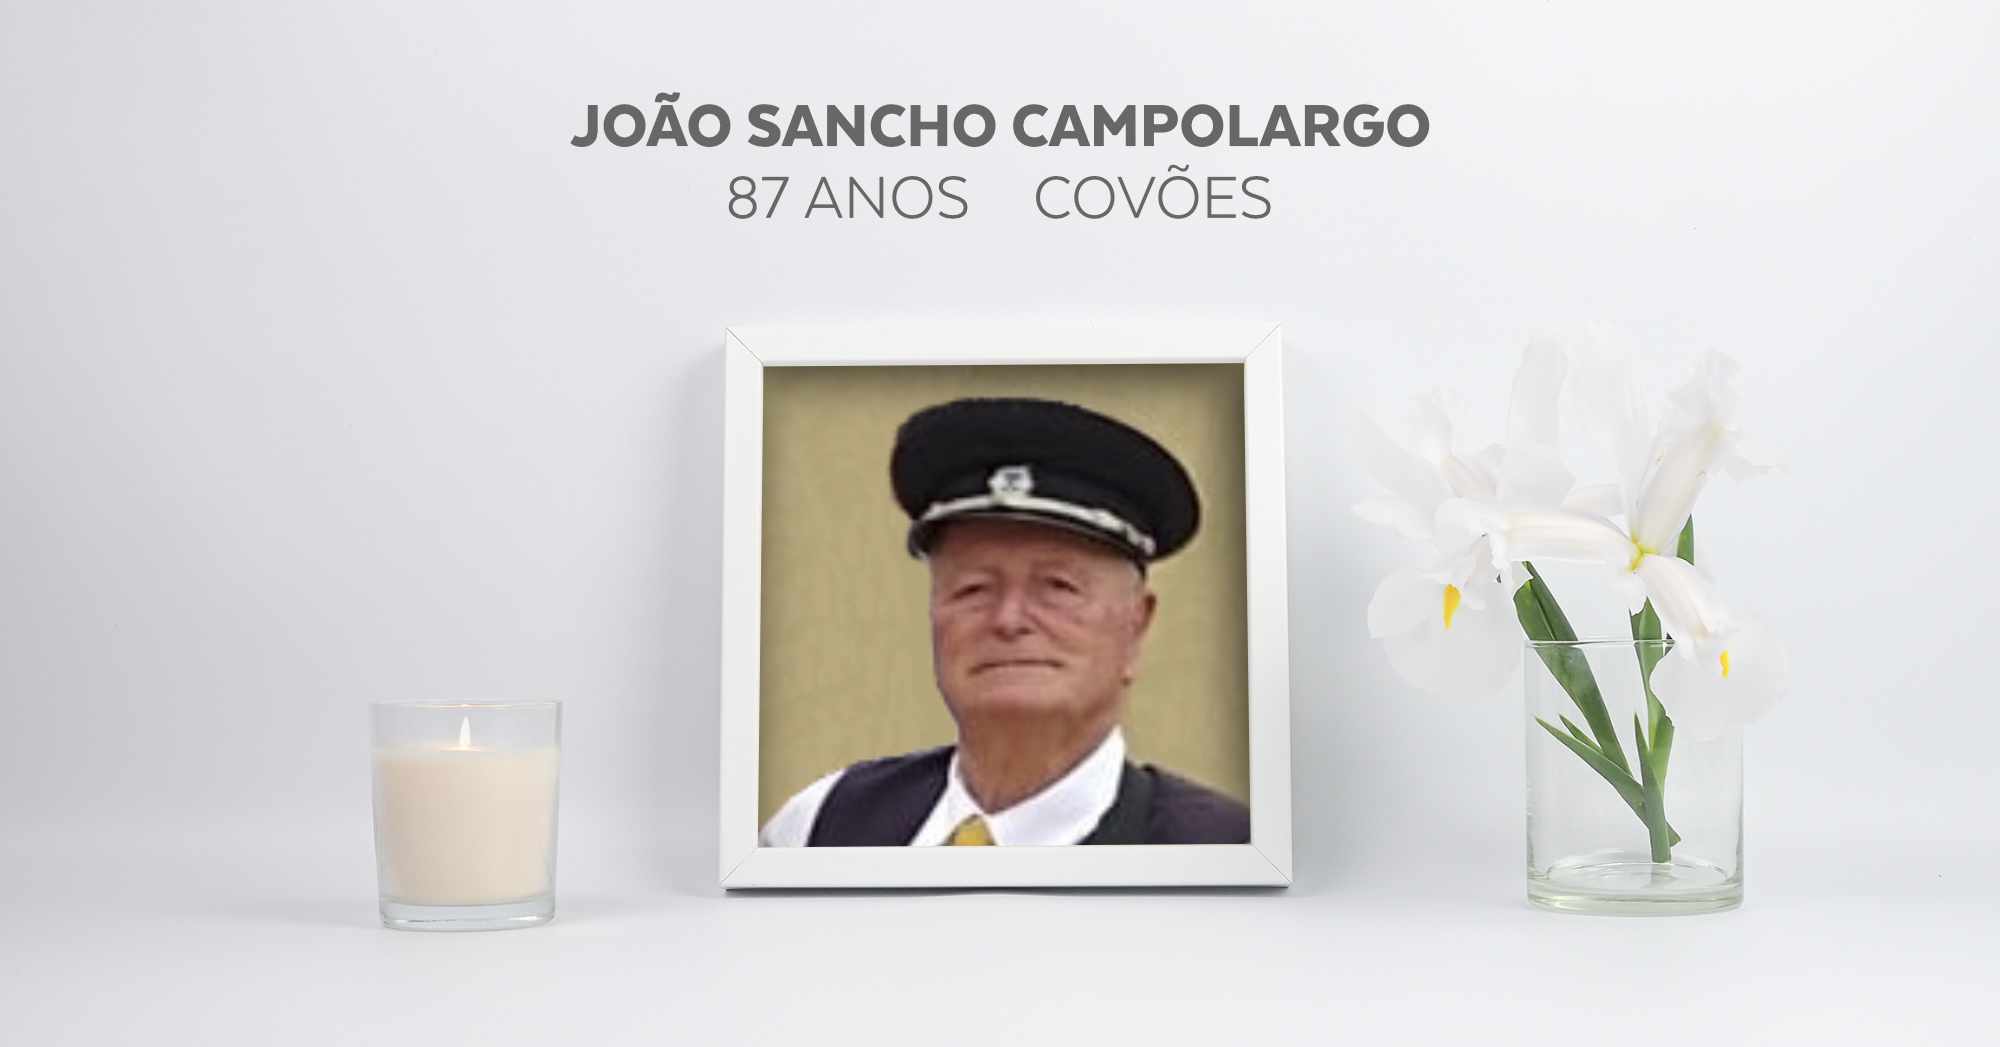 João Sancho Campolargo